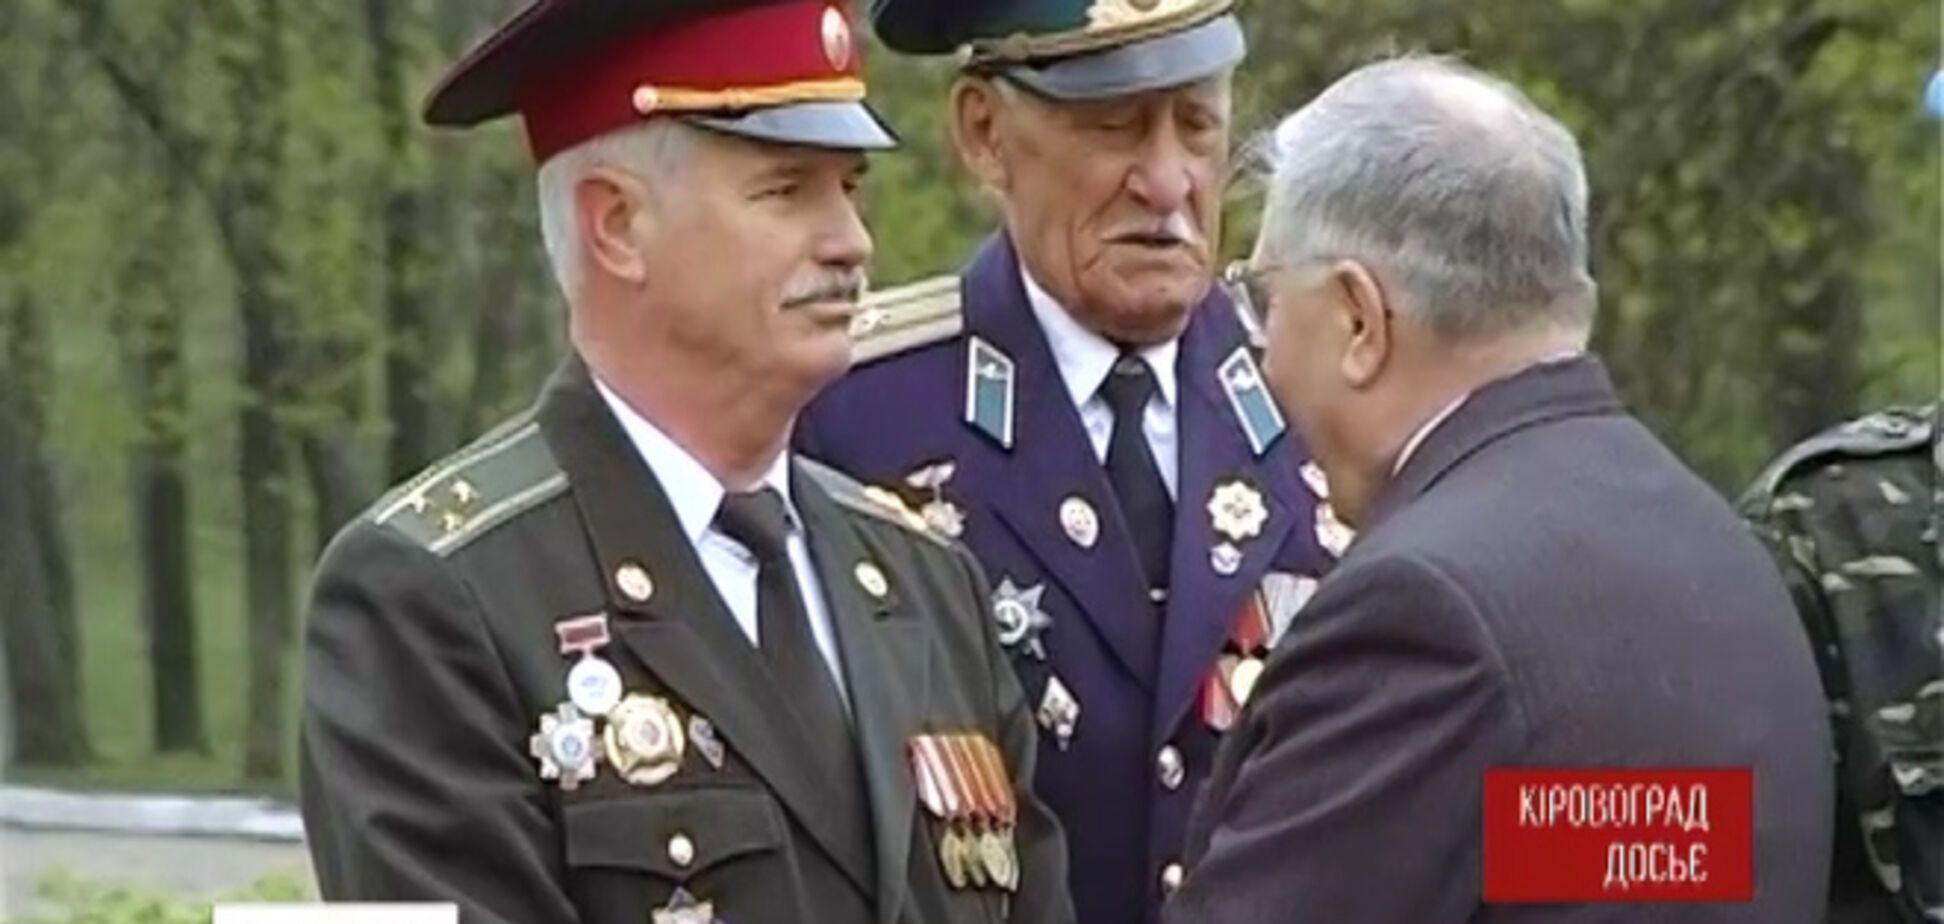 Кіровоградські ветерани вирішили відмовитися від георгіївських стрічок на 9 Травня